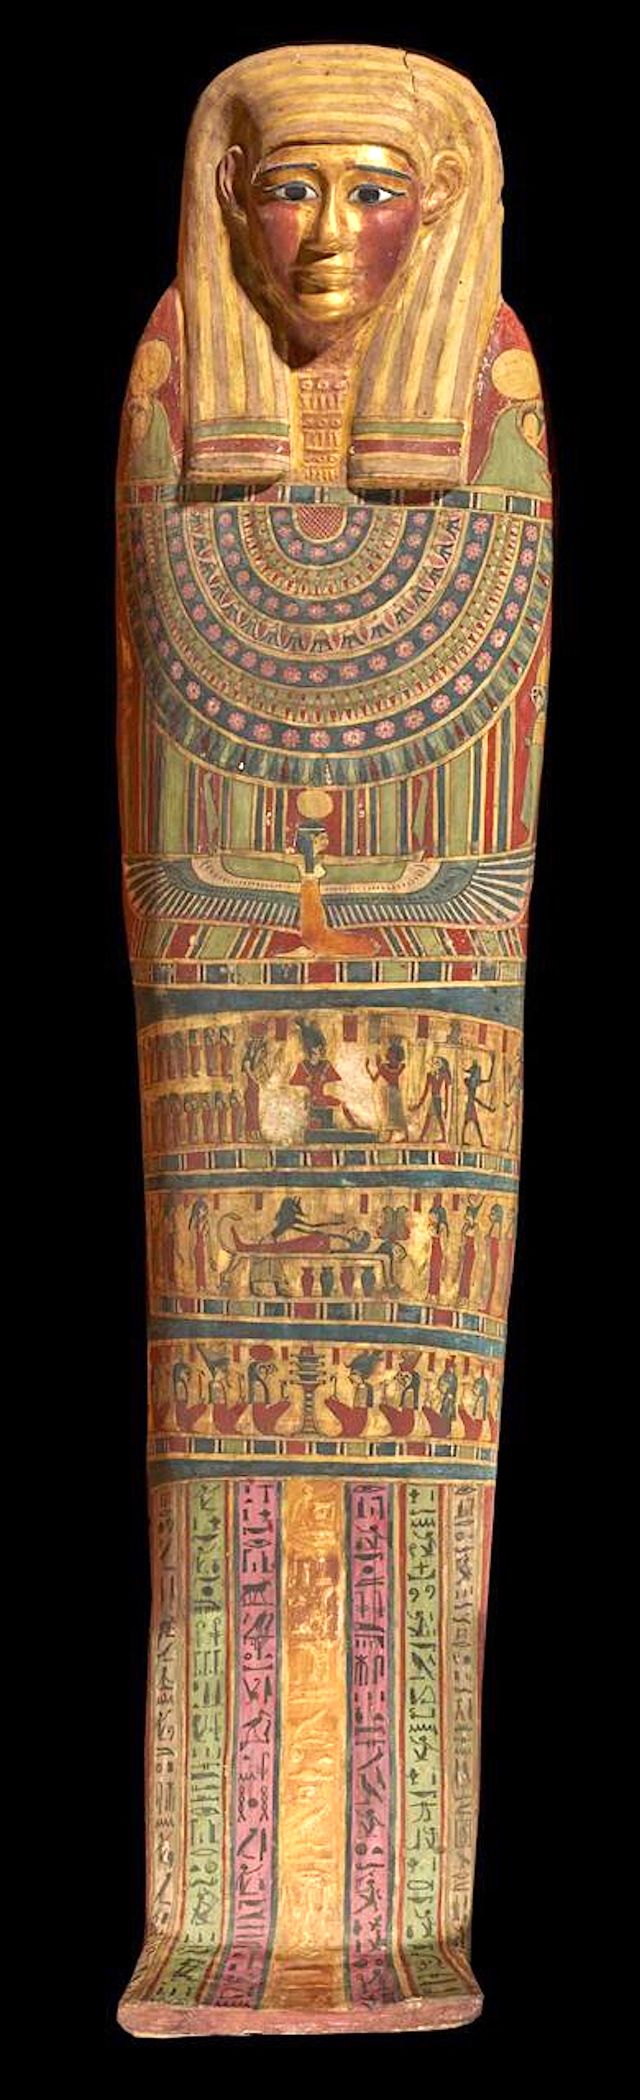 Откриха 49 амулета в известна древноегипетска мумия